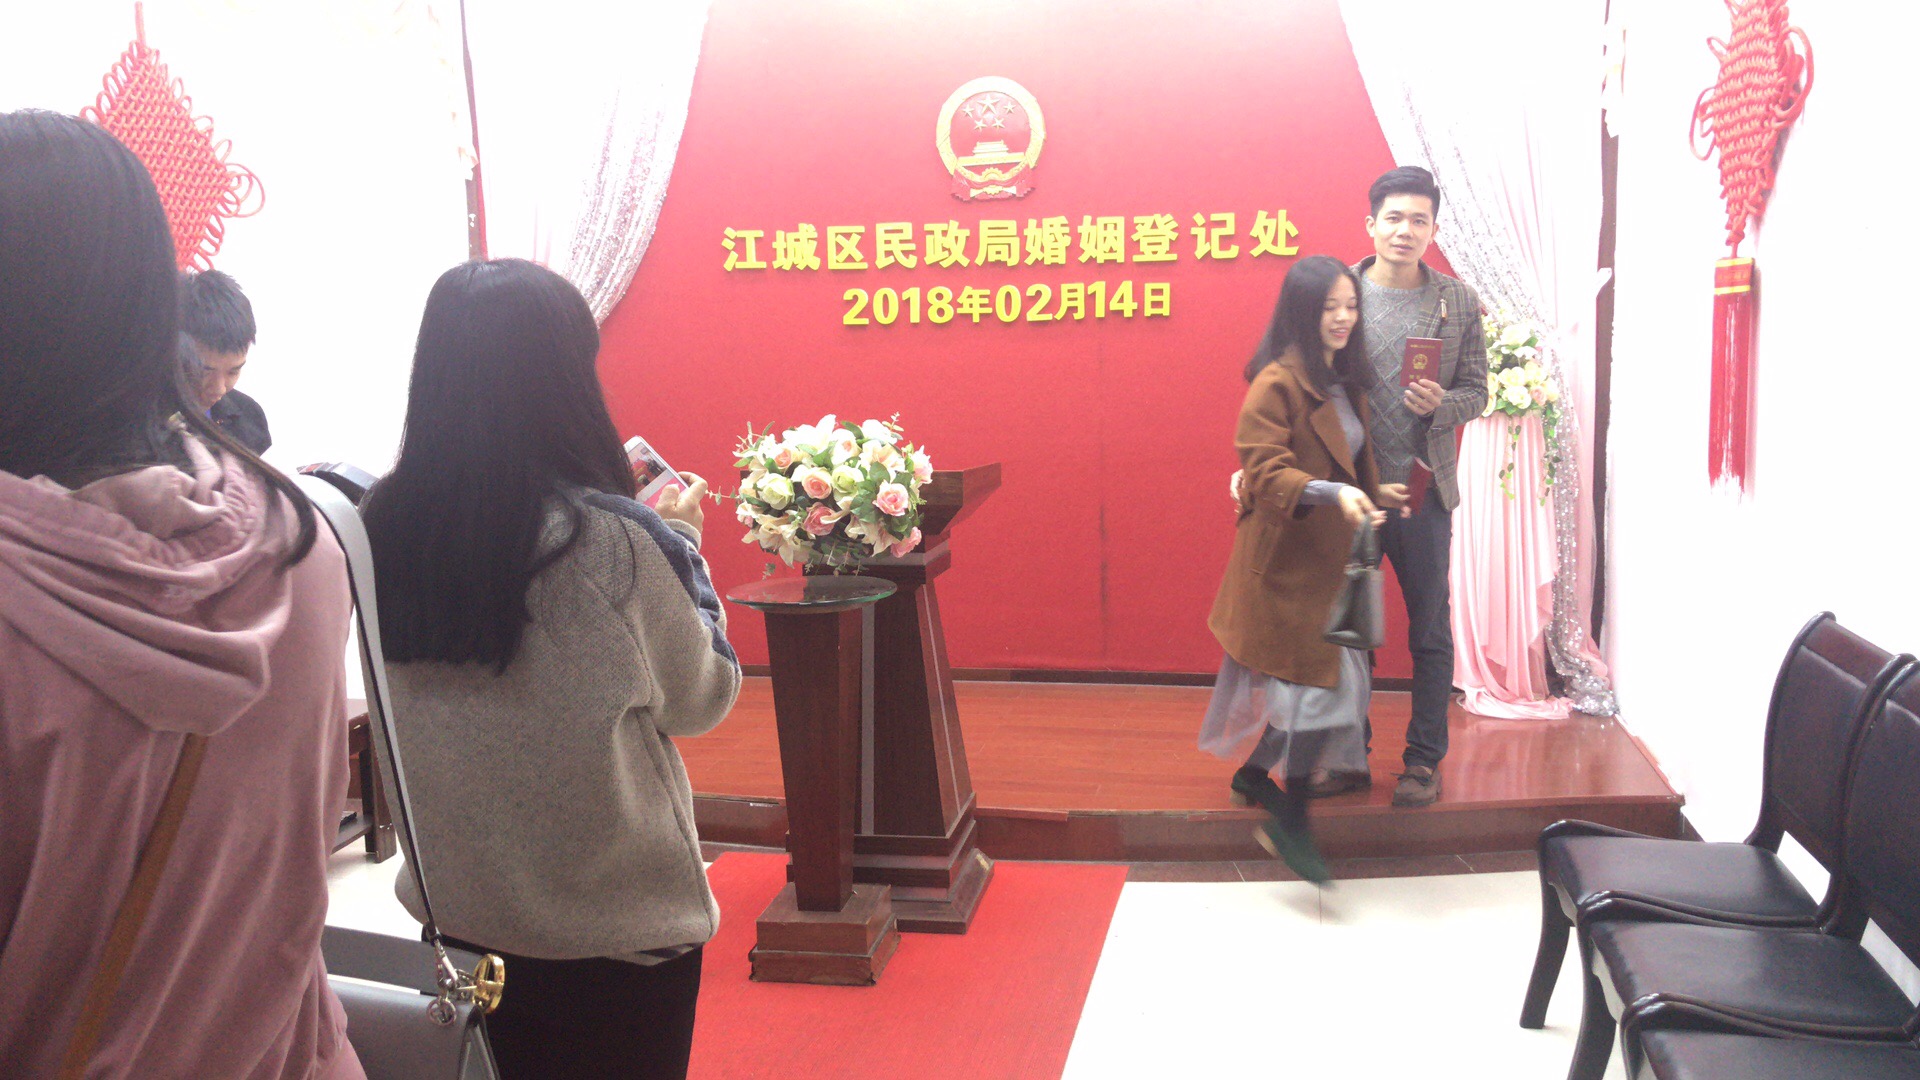 2月14日西方情人节江城区婚姻登记处迎来前来办理结婚登记手续的高峰